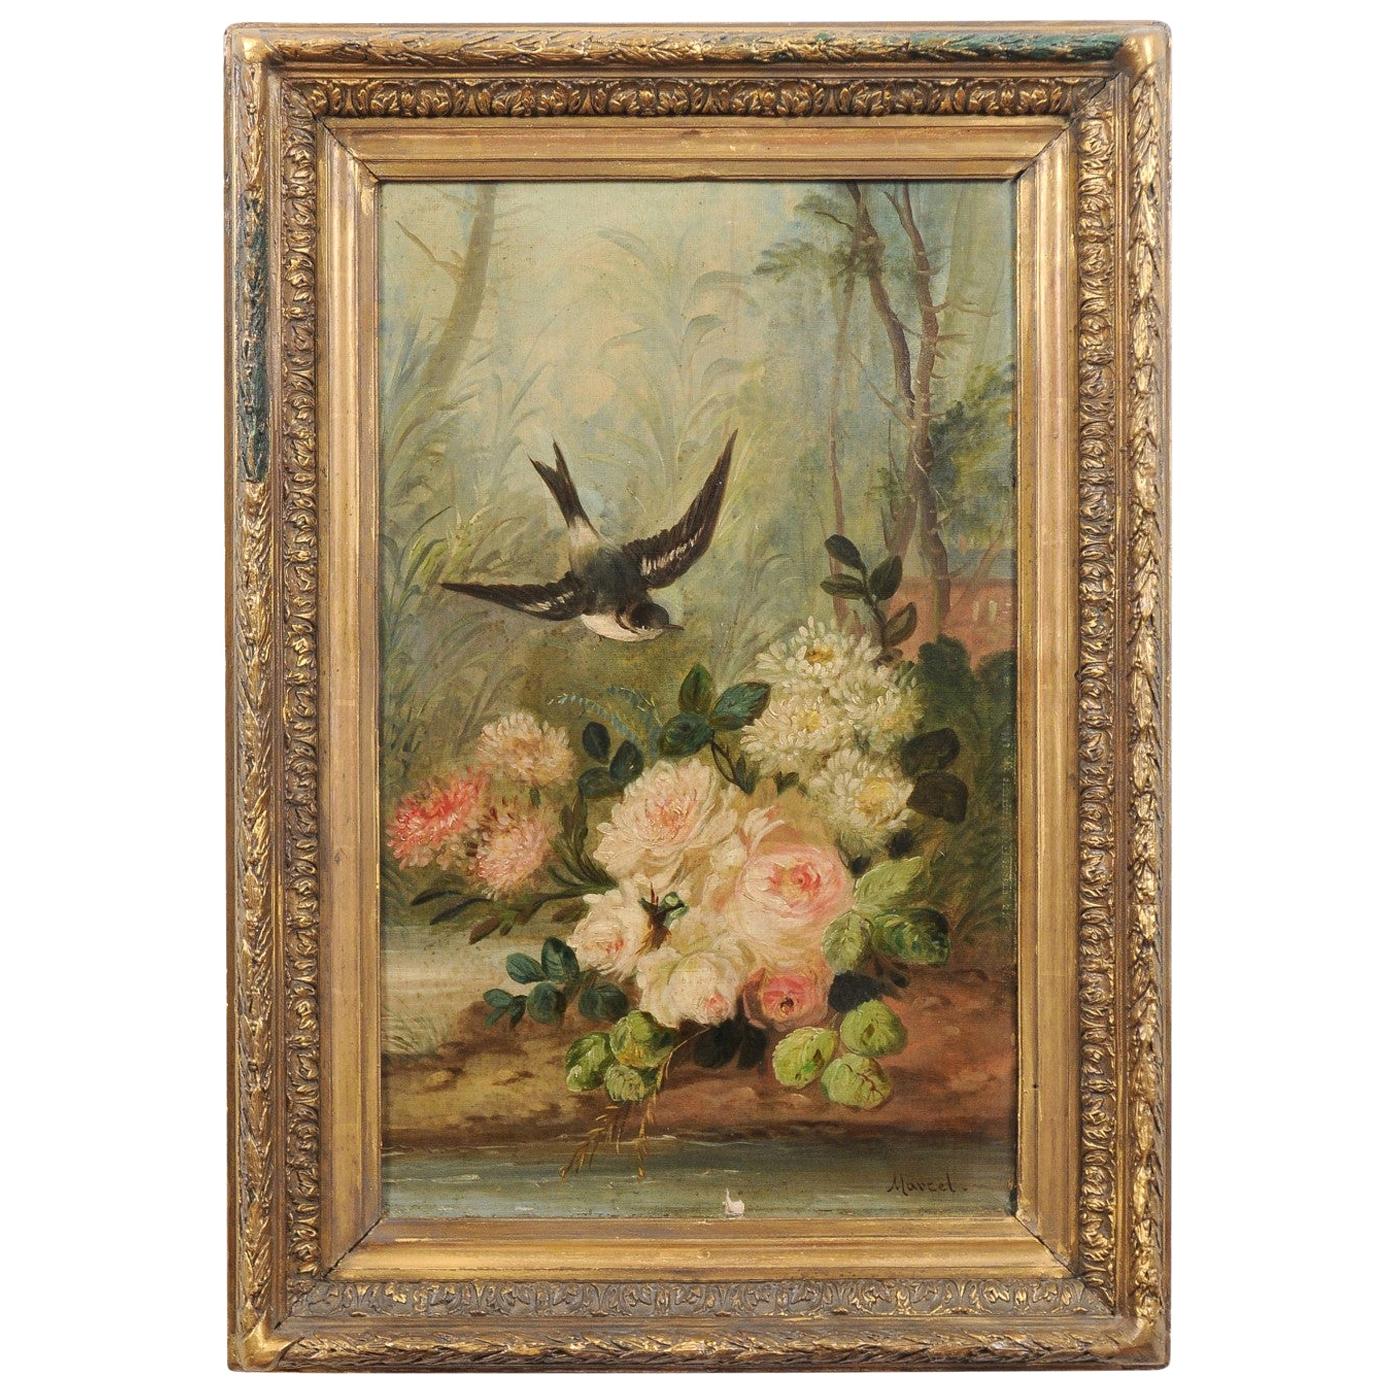 Französisch Napoléon III 1850s Öl auf Leinwand gerahmt Gemälde mit Vogel und Rosen